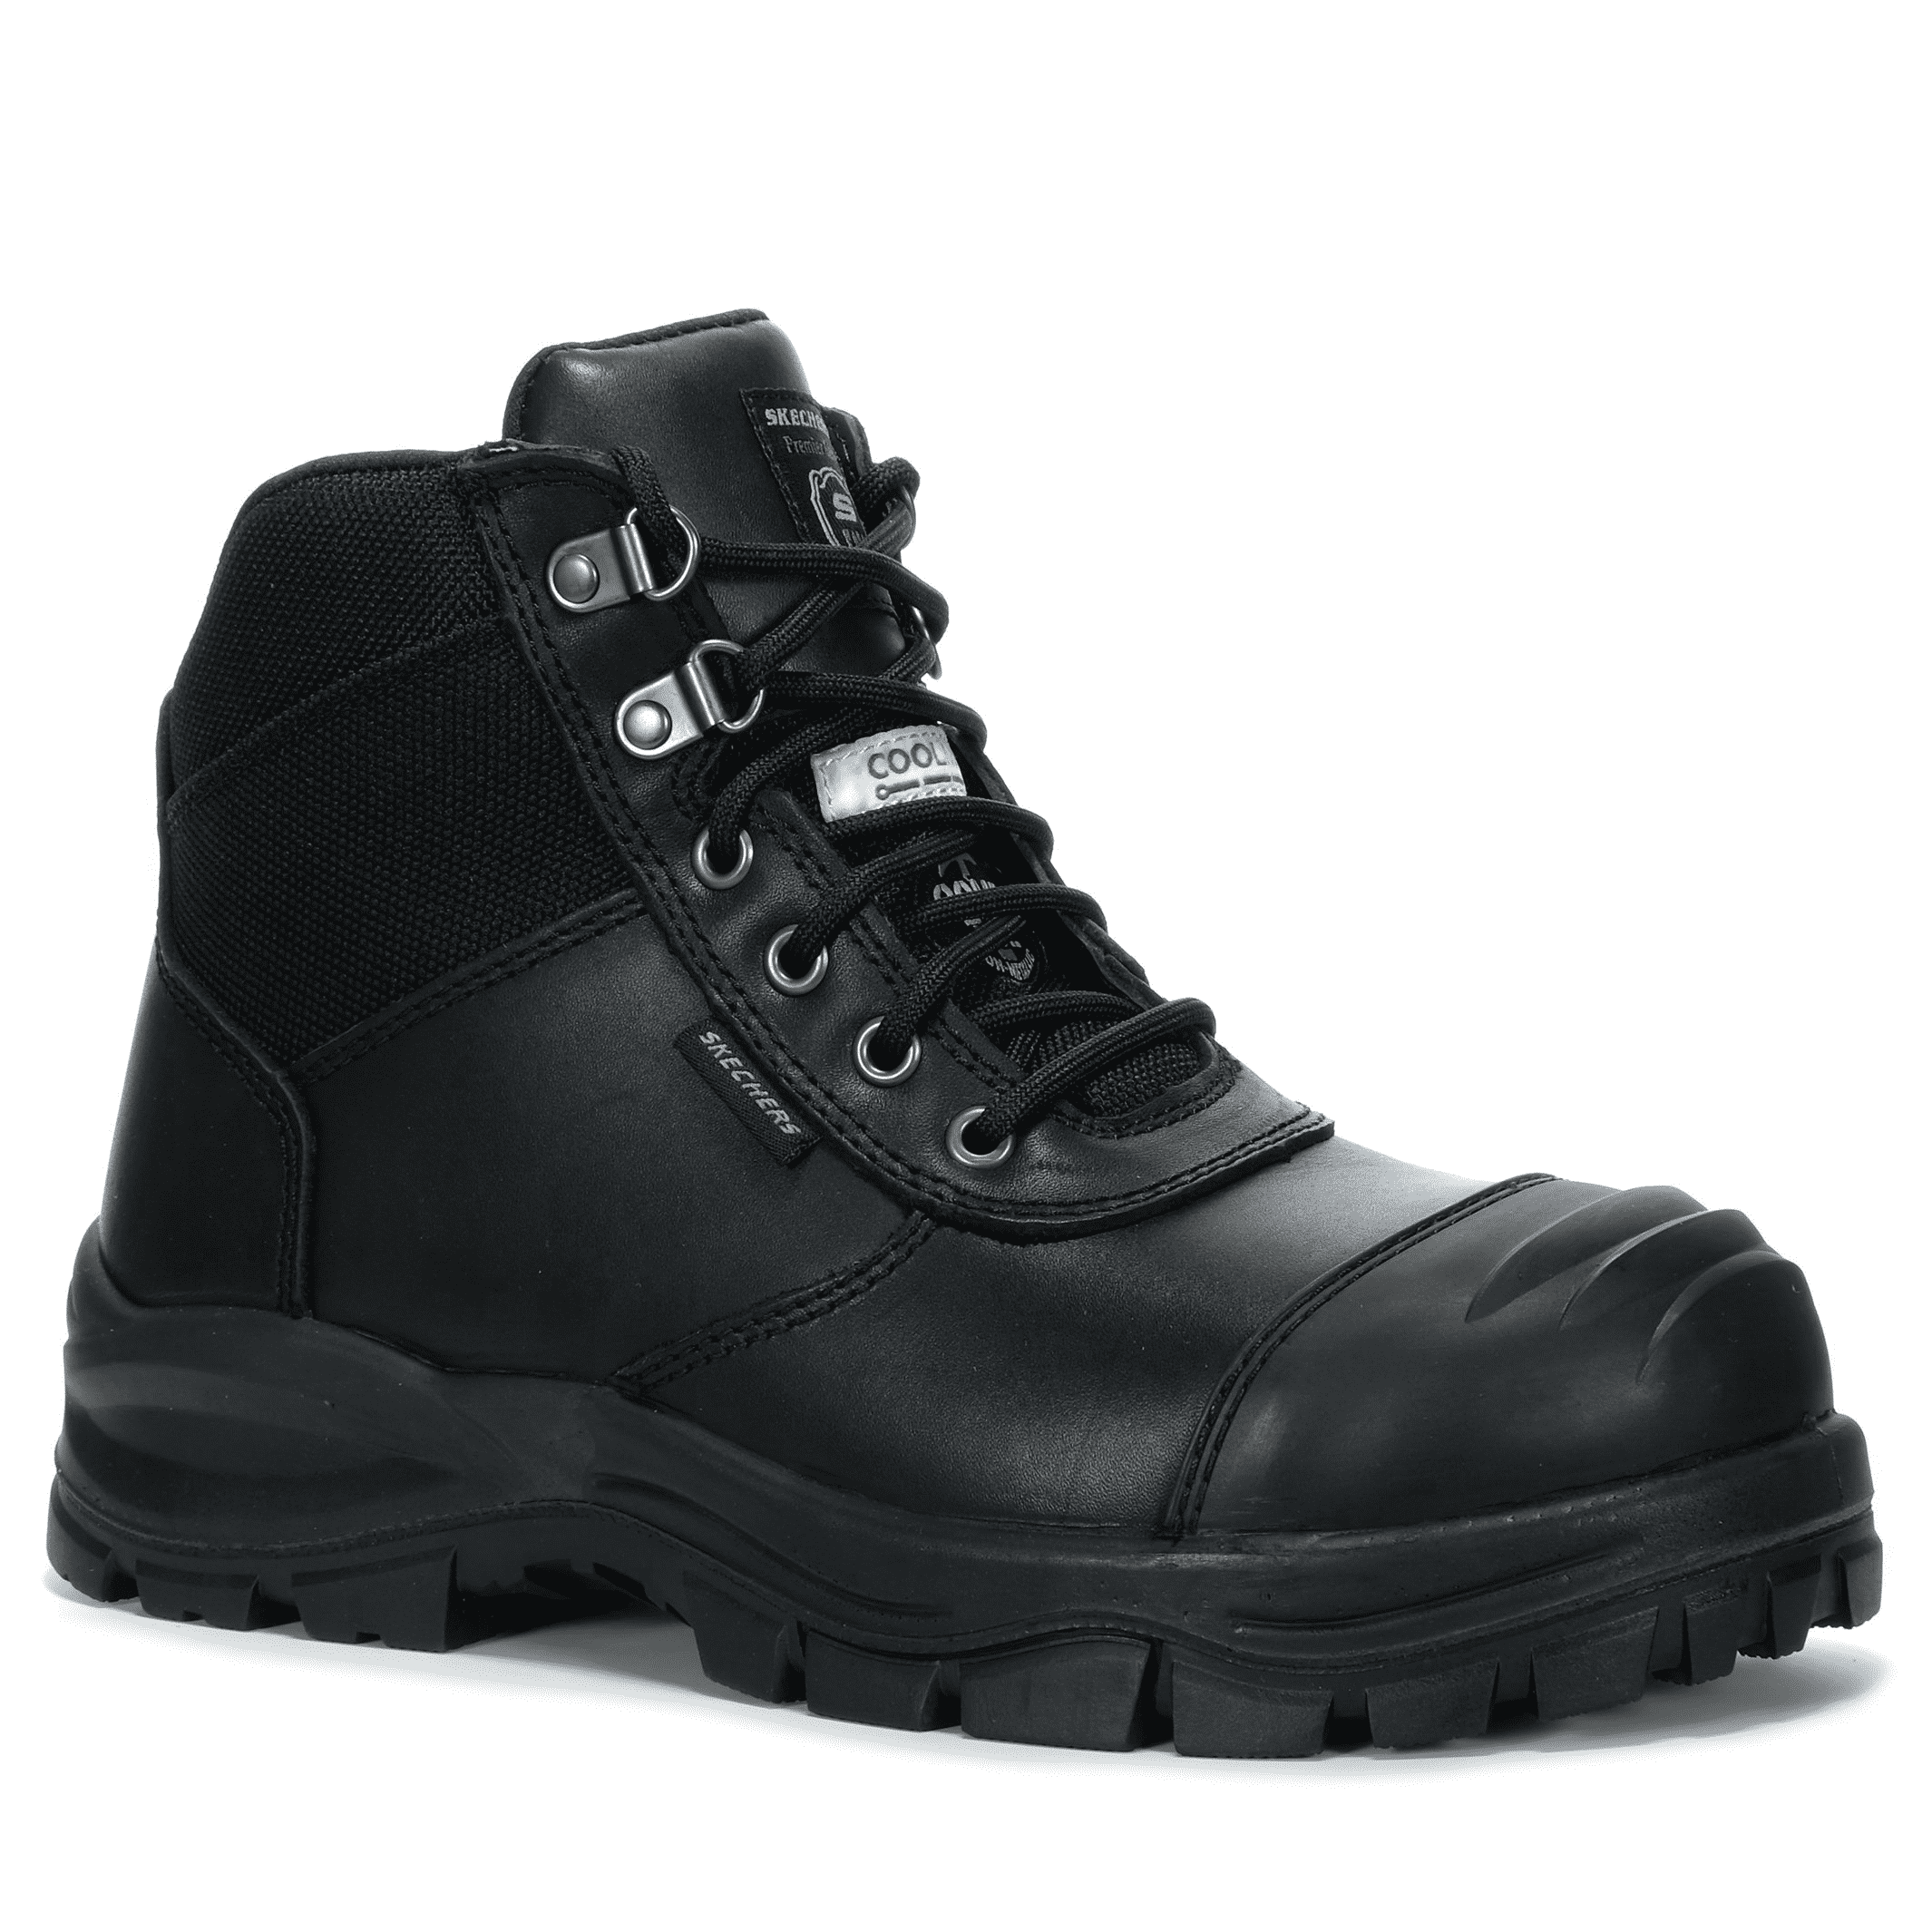 Skechers - Composite Toe Work Boot - Black